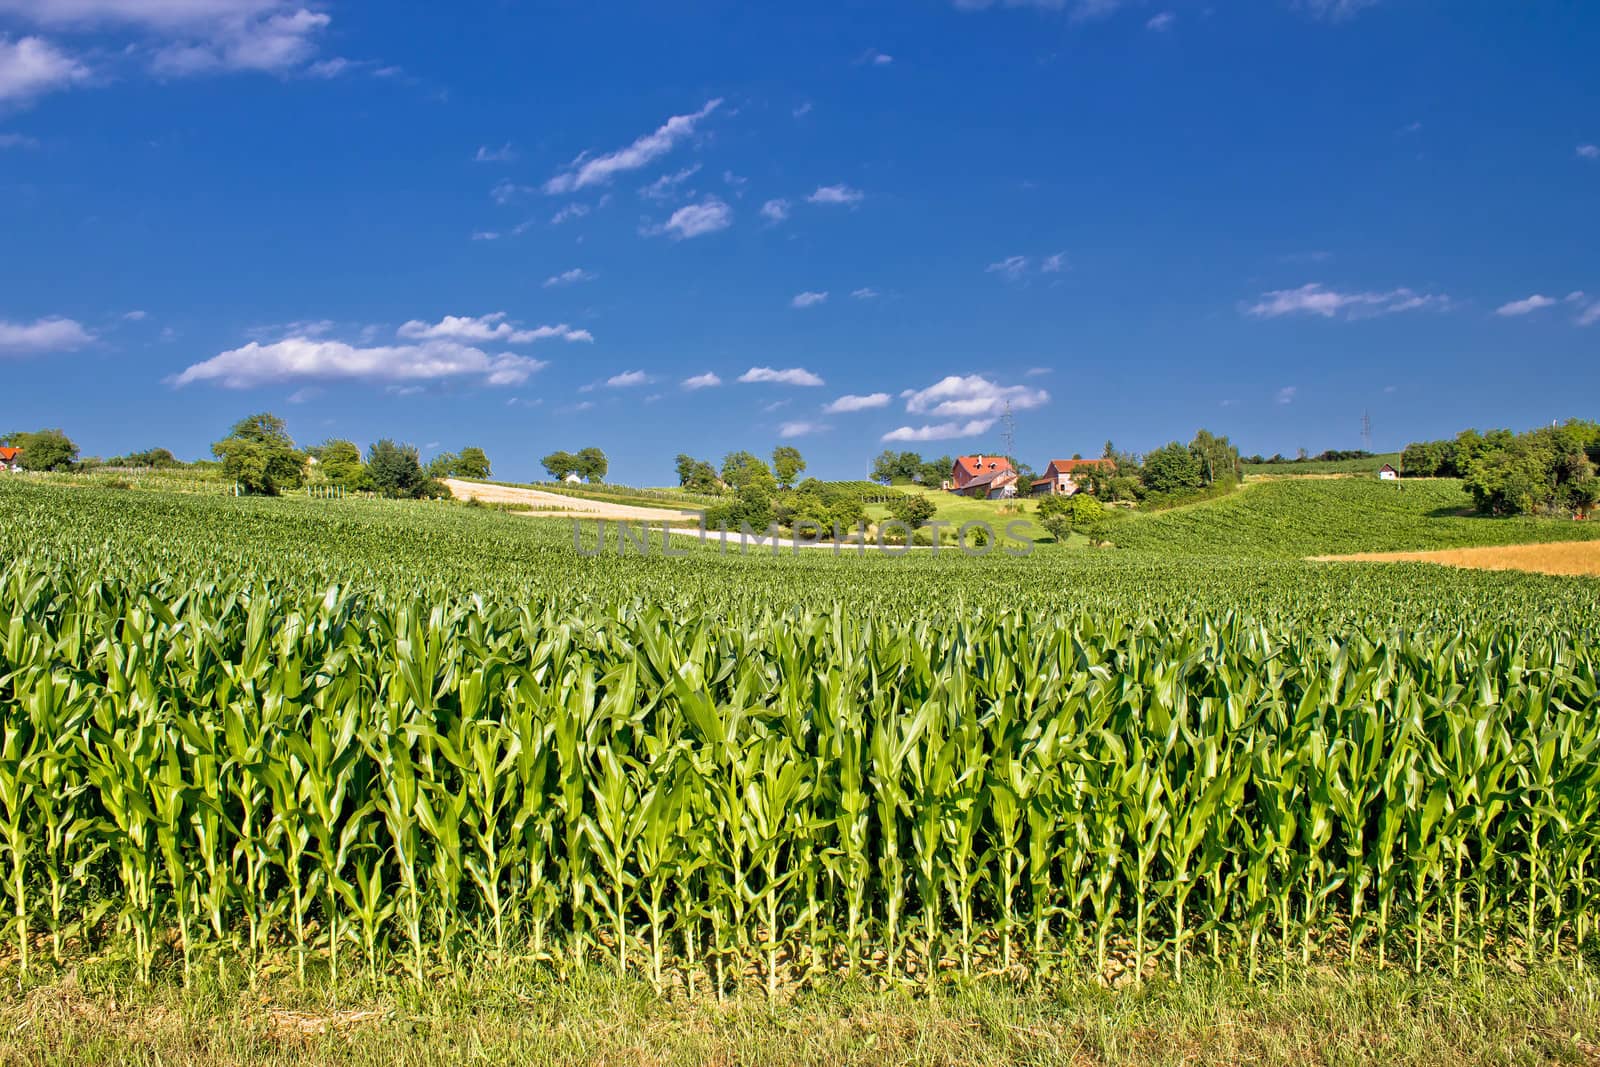 Corn field in agricultural rural landscape, Prigorje region, Croatia